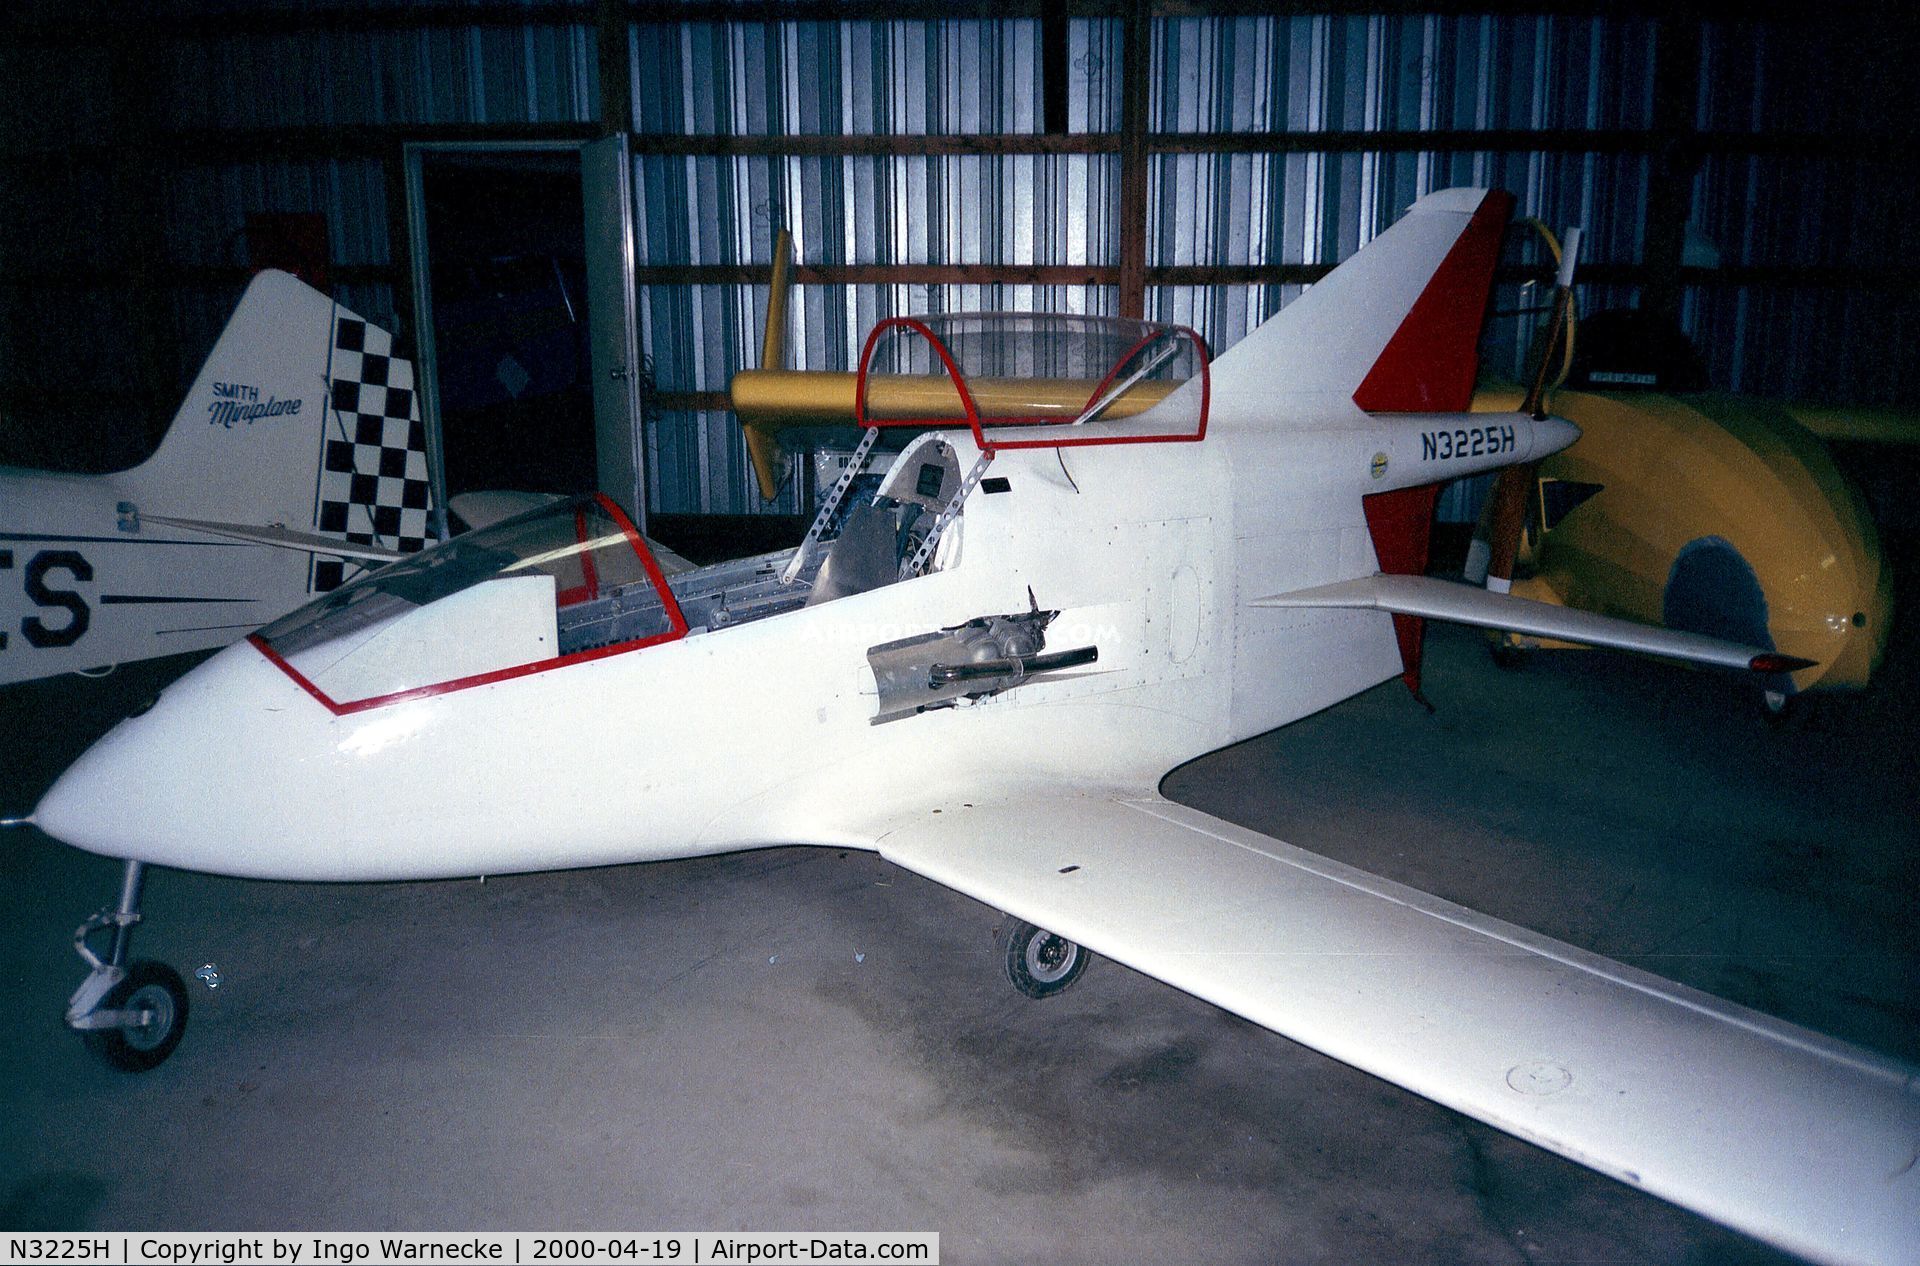 N3225H, 1984 Bede BD-5B C/N 3033, Bede (Walter) BD-5-B at the Airpower Museum, Ottumwa IA